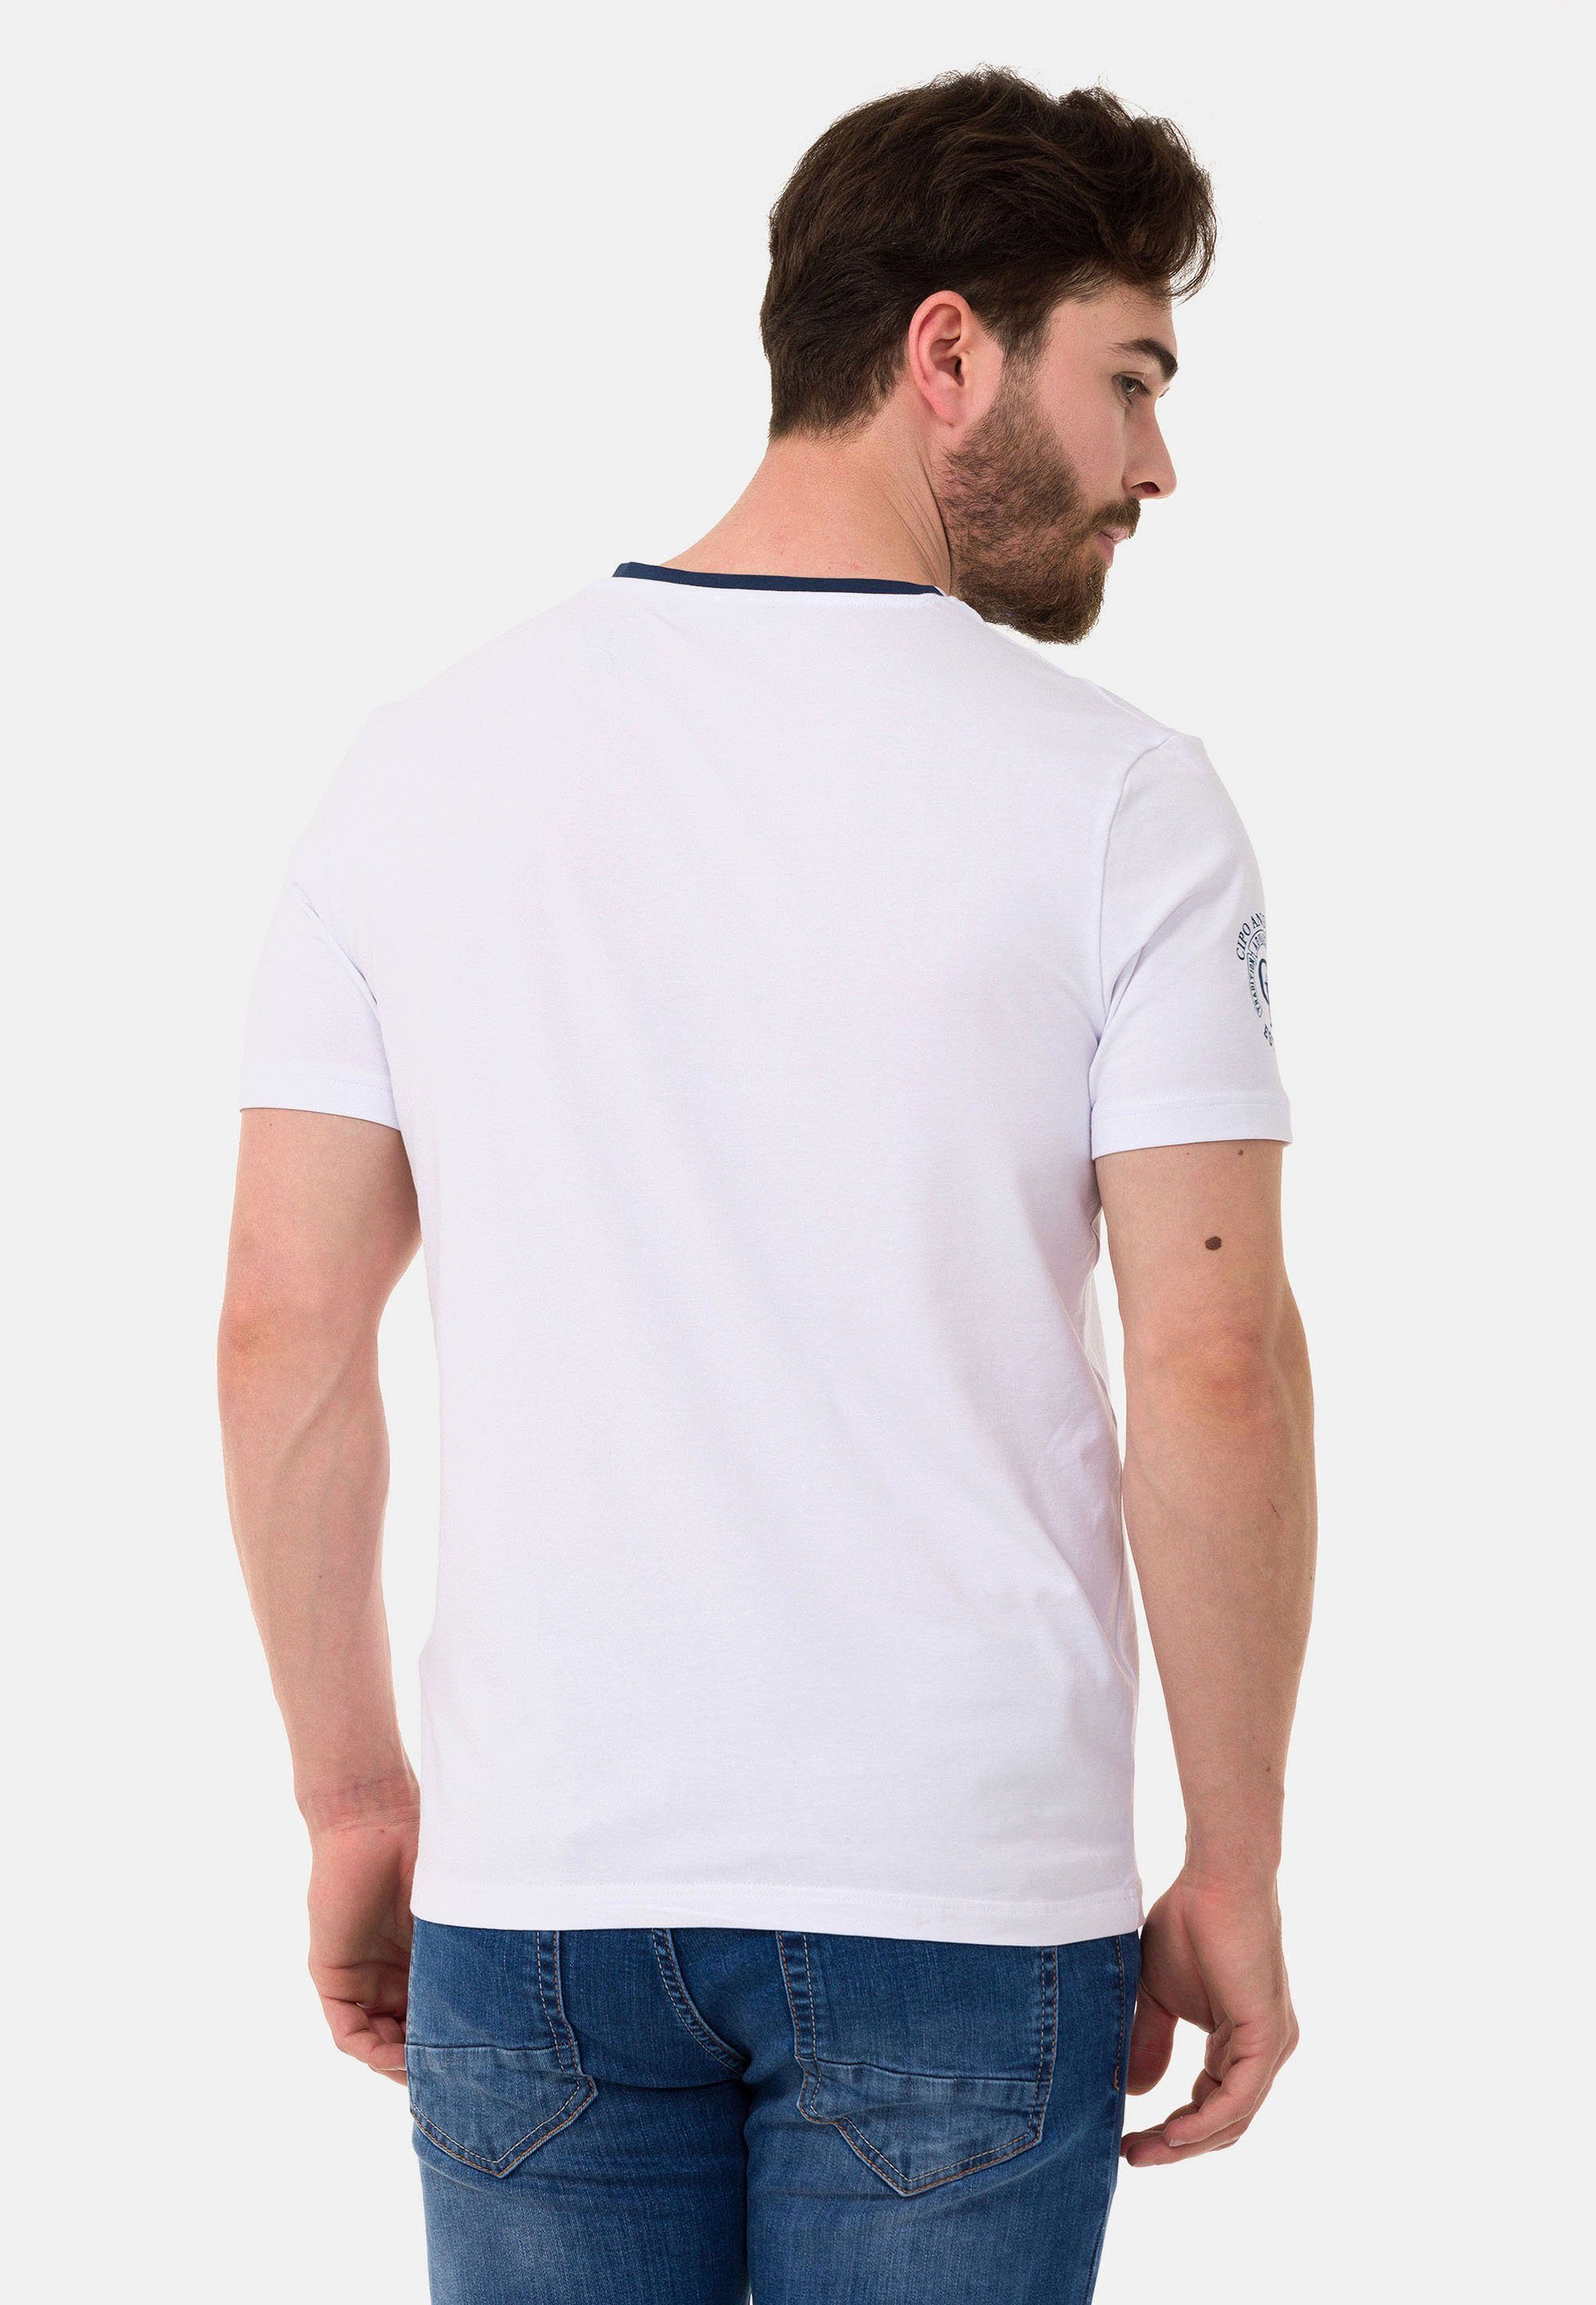 Cipo & Baxx T-Shirt mit dezenten Markenlogos weiß